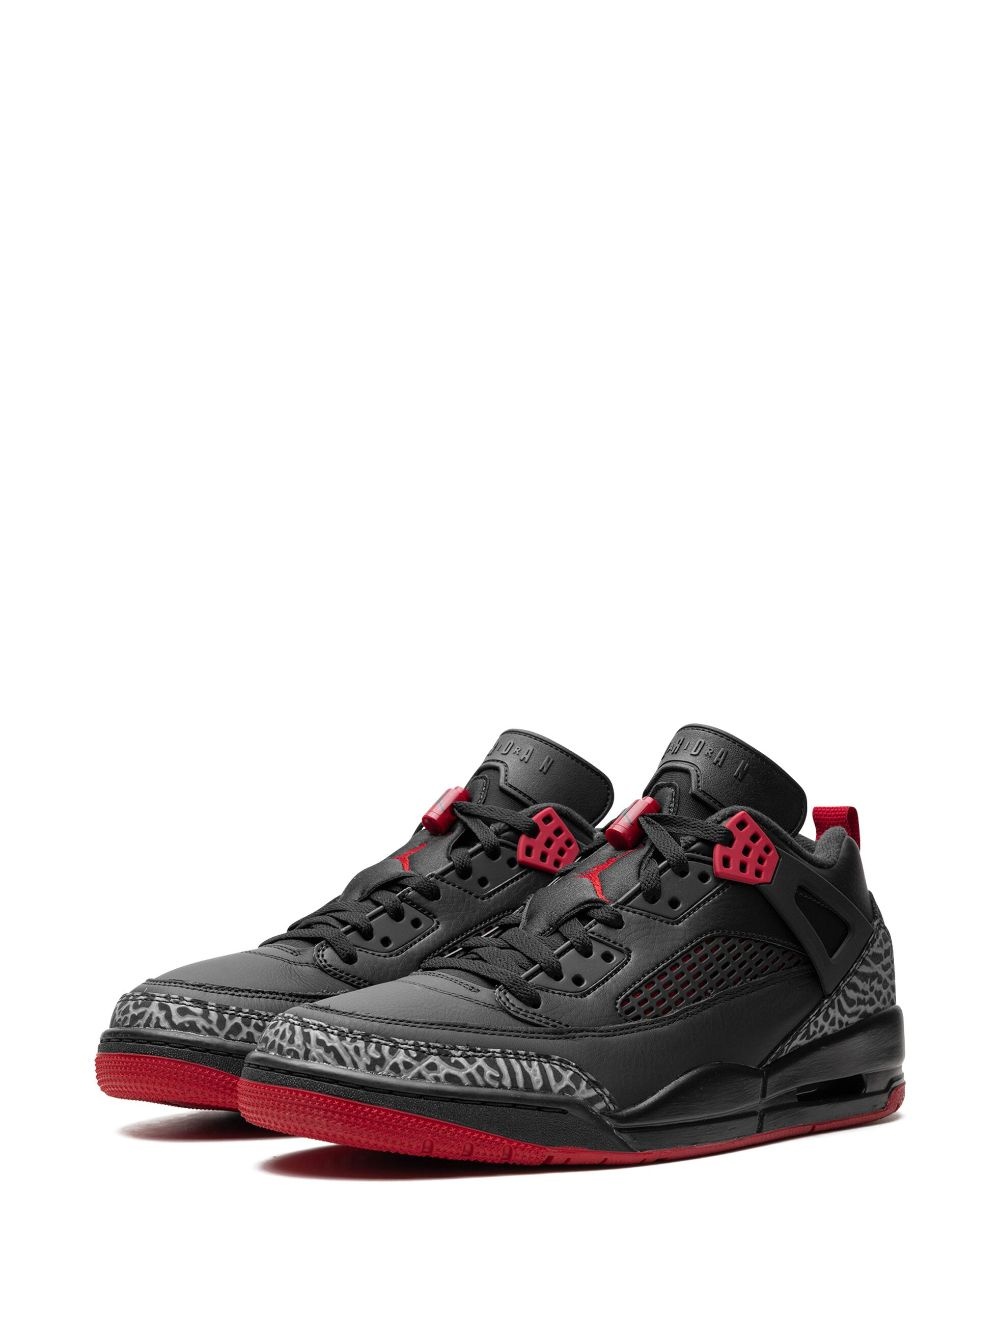 Air Jordan Spizike Low "Bred" sneakers - 4